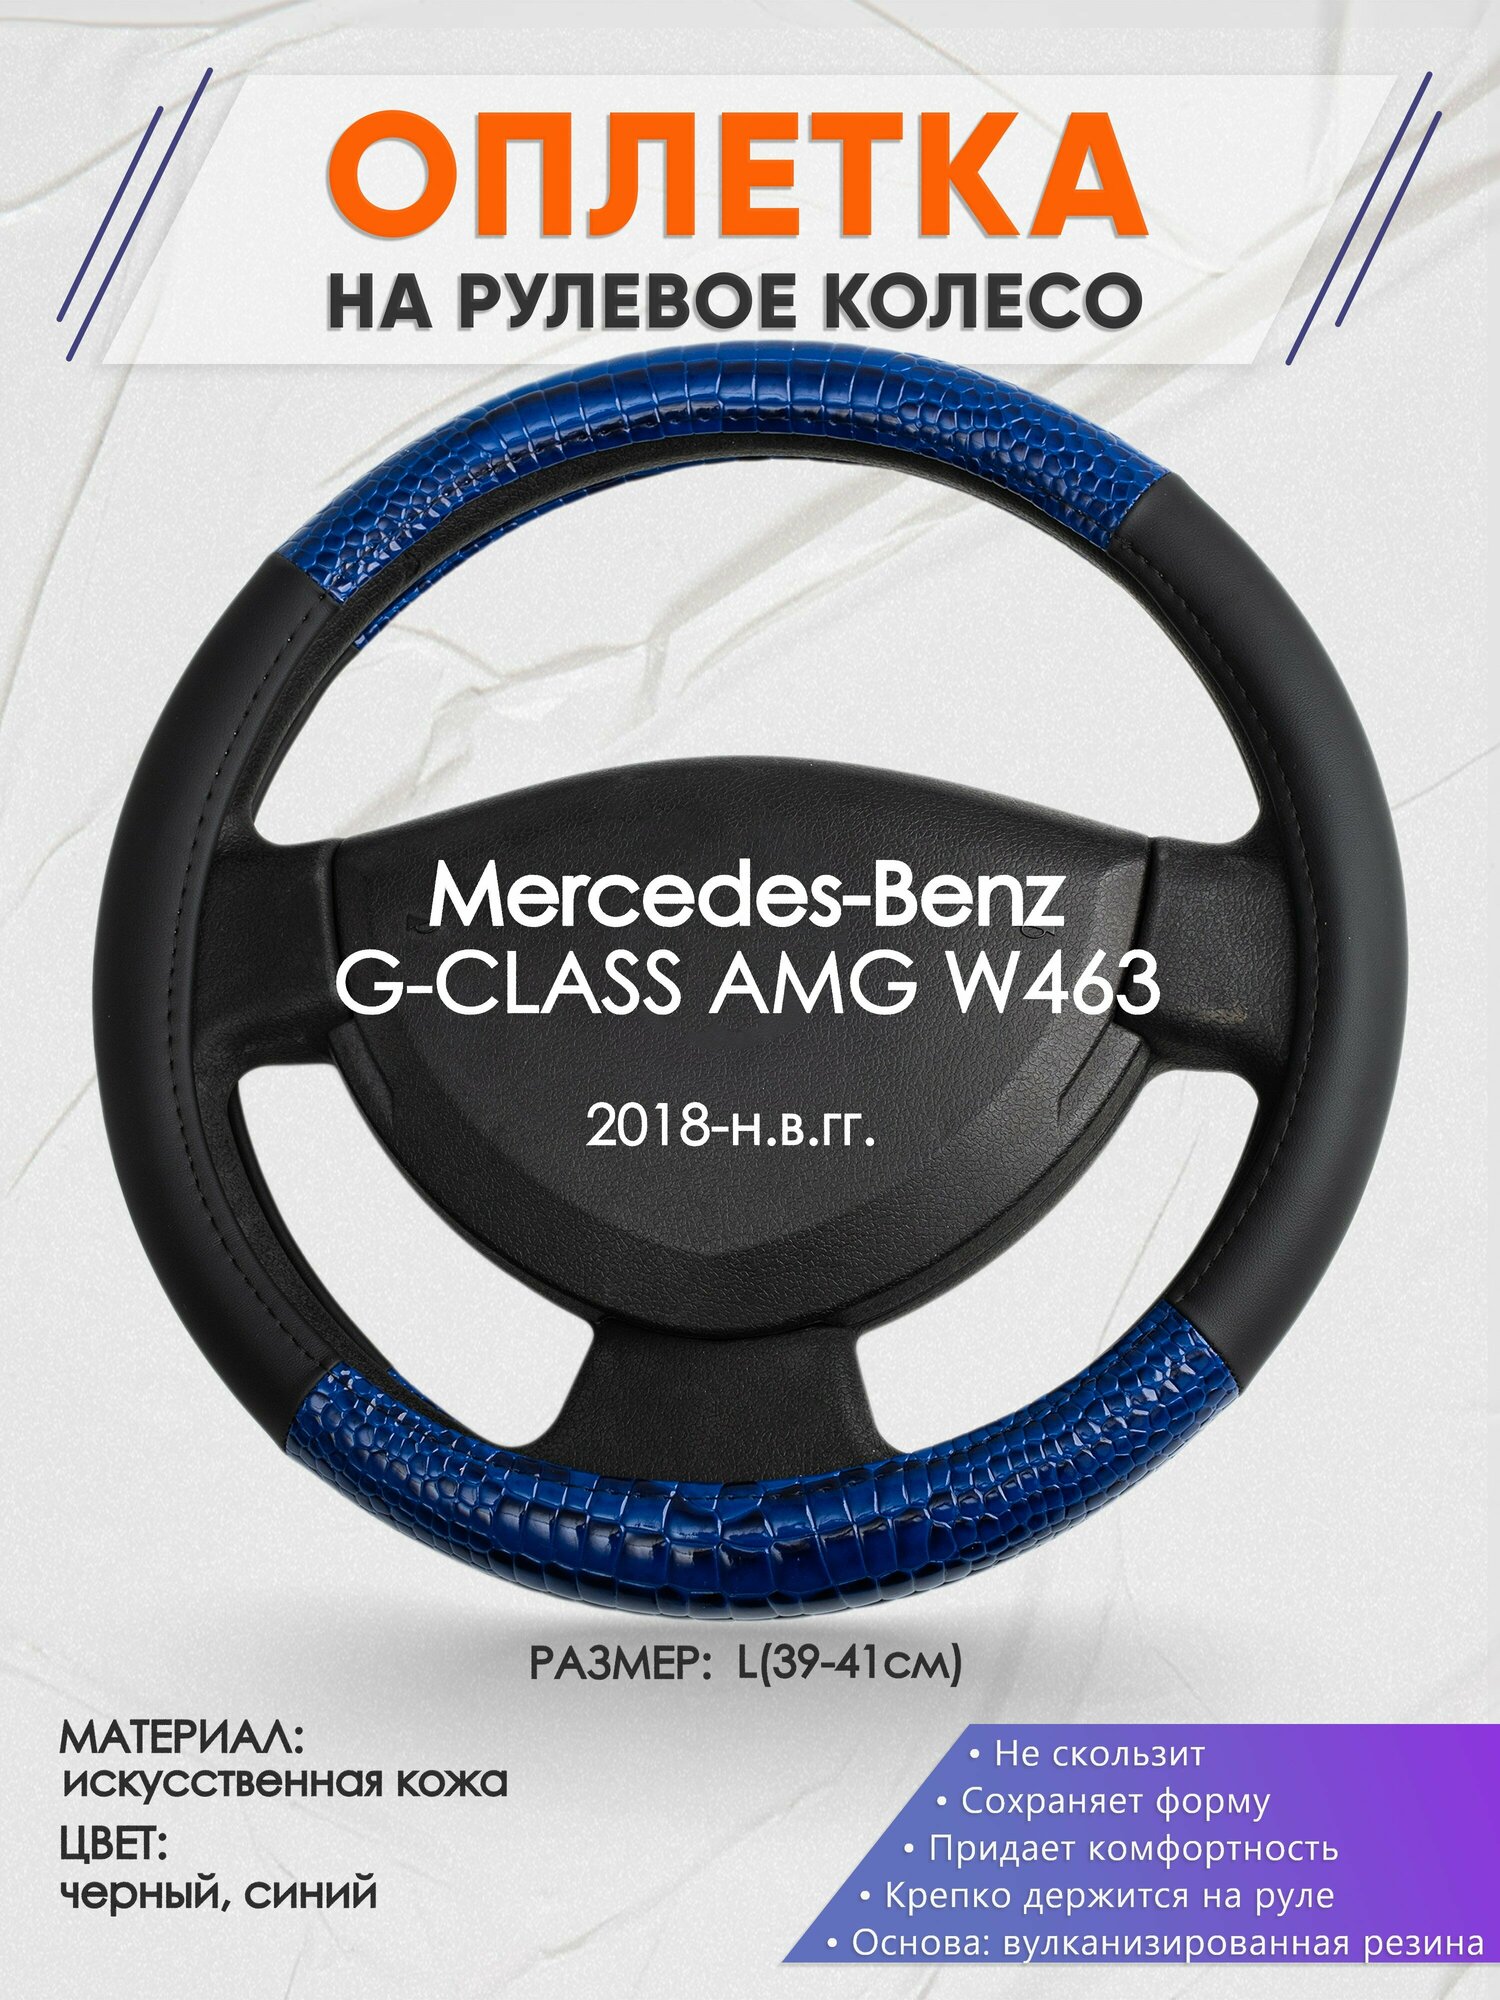 Оплетка на руль для Mercedes-Benz G-CLASS AMG W463(Мерседес Бенц Г Класс) 2018-н. в, L(39-41см), Искусственная кожа 82